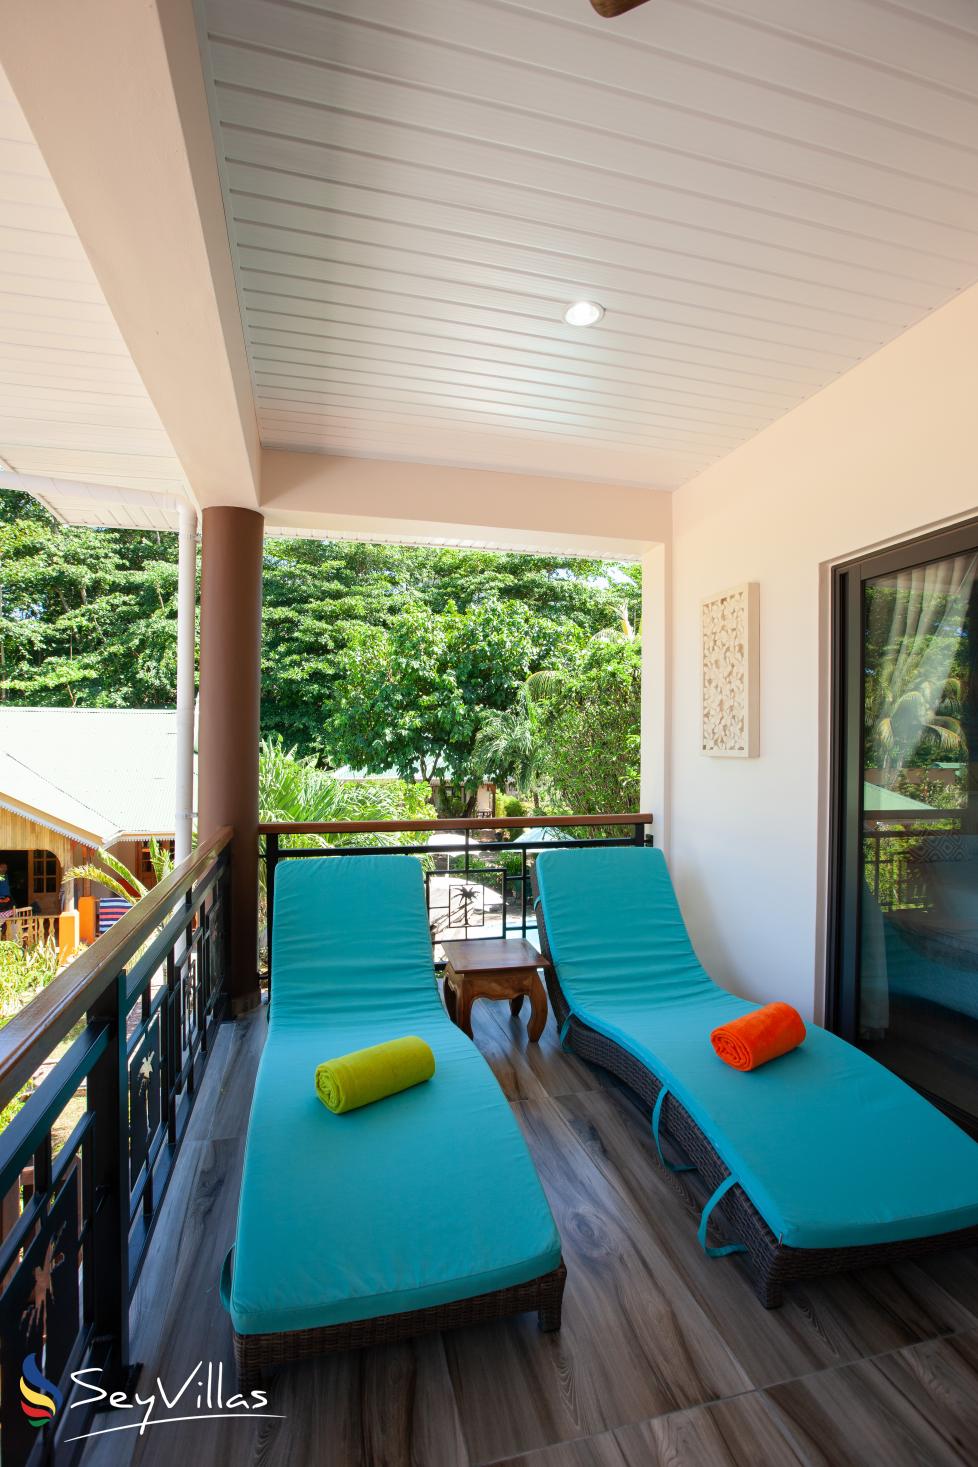 Photo 128: Casa de Leela - Deluxe Apartment - La Digue (Seychelles)